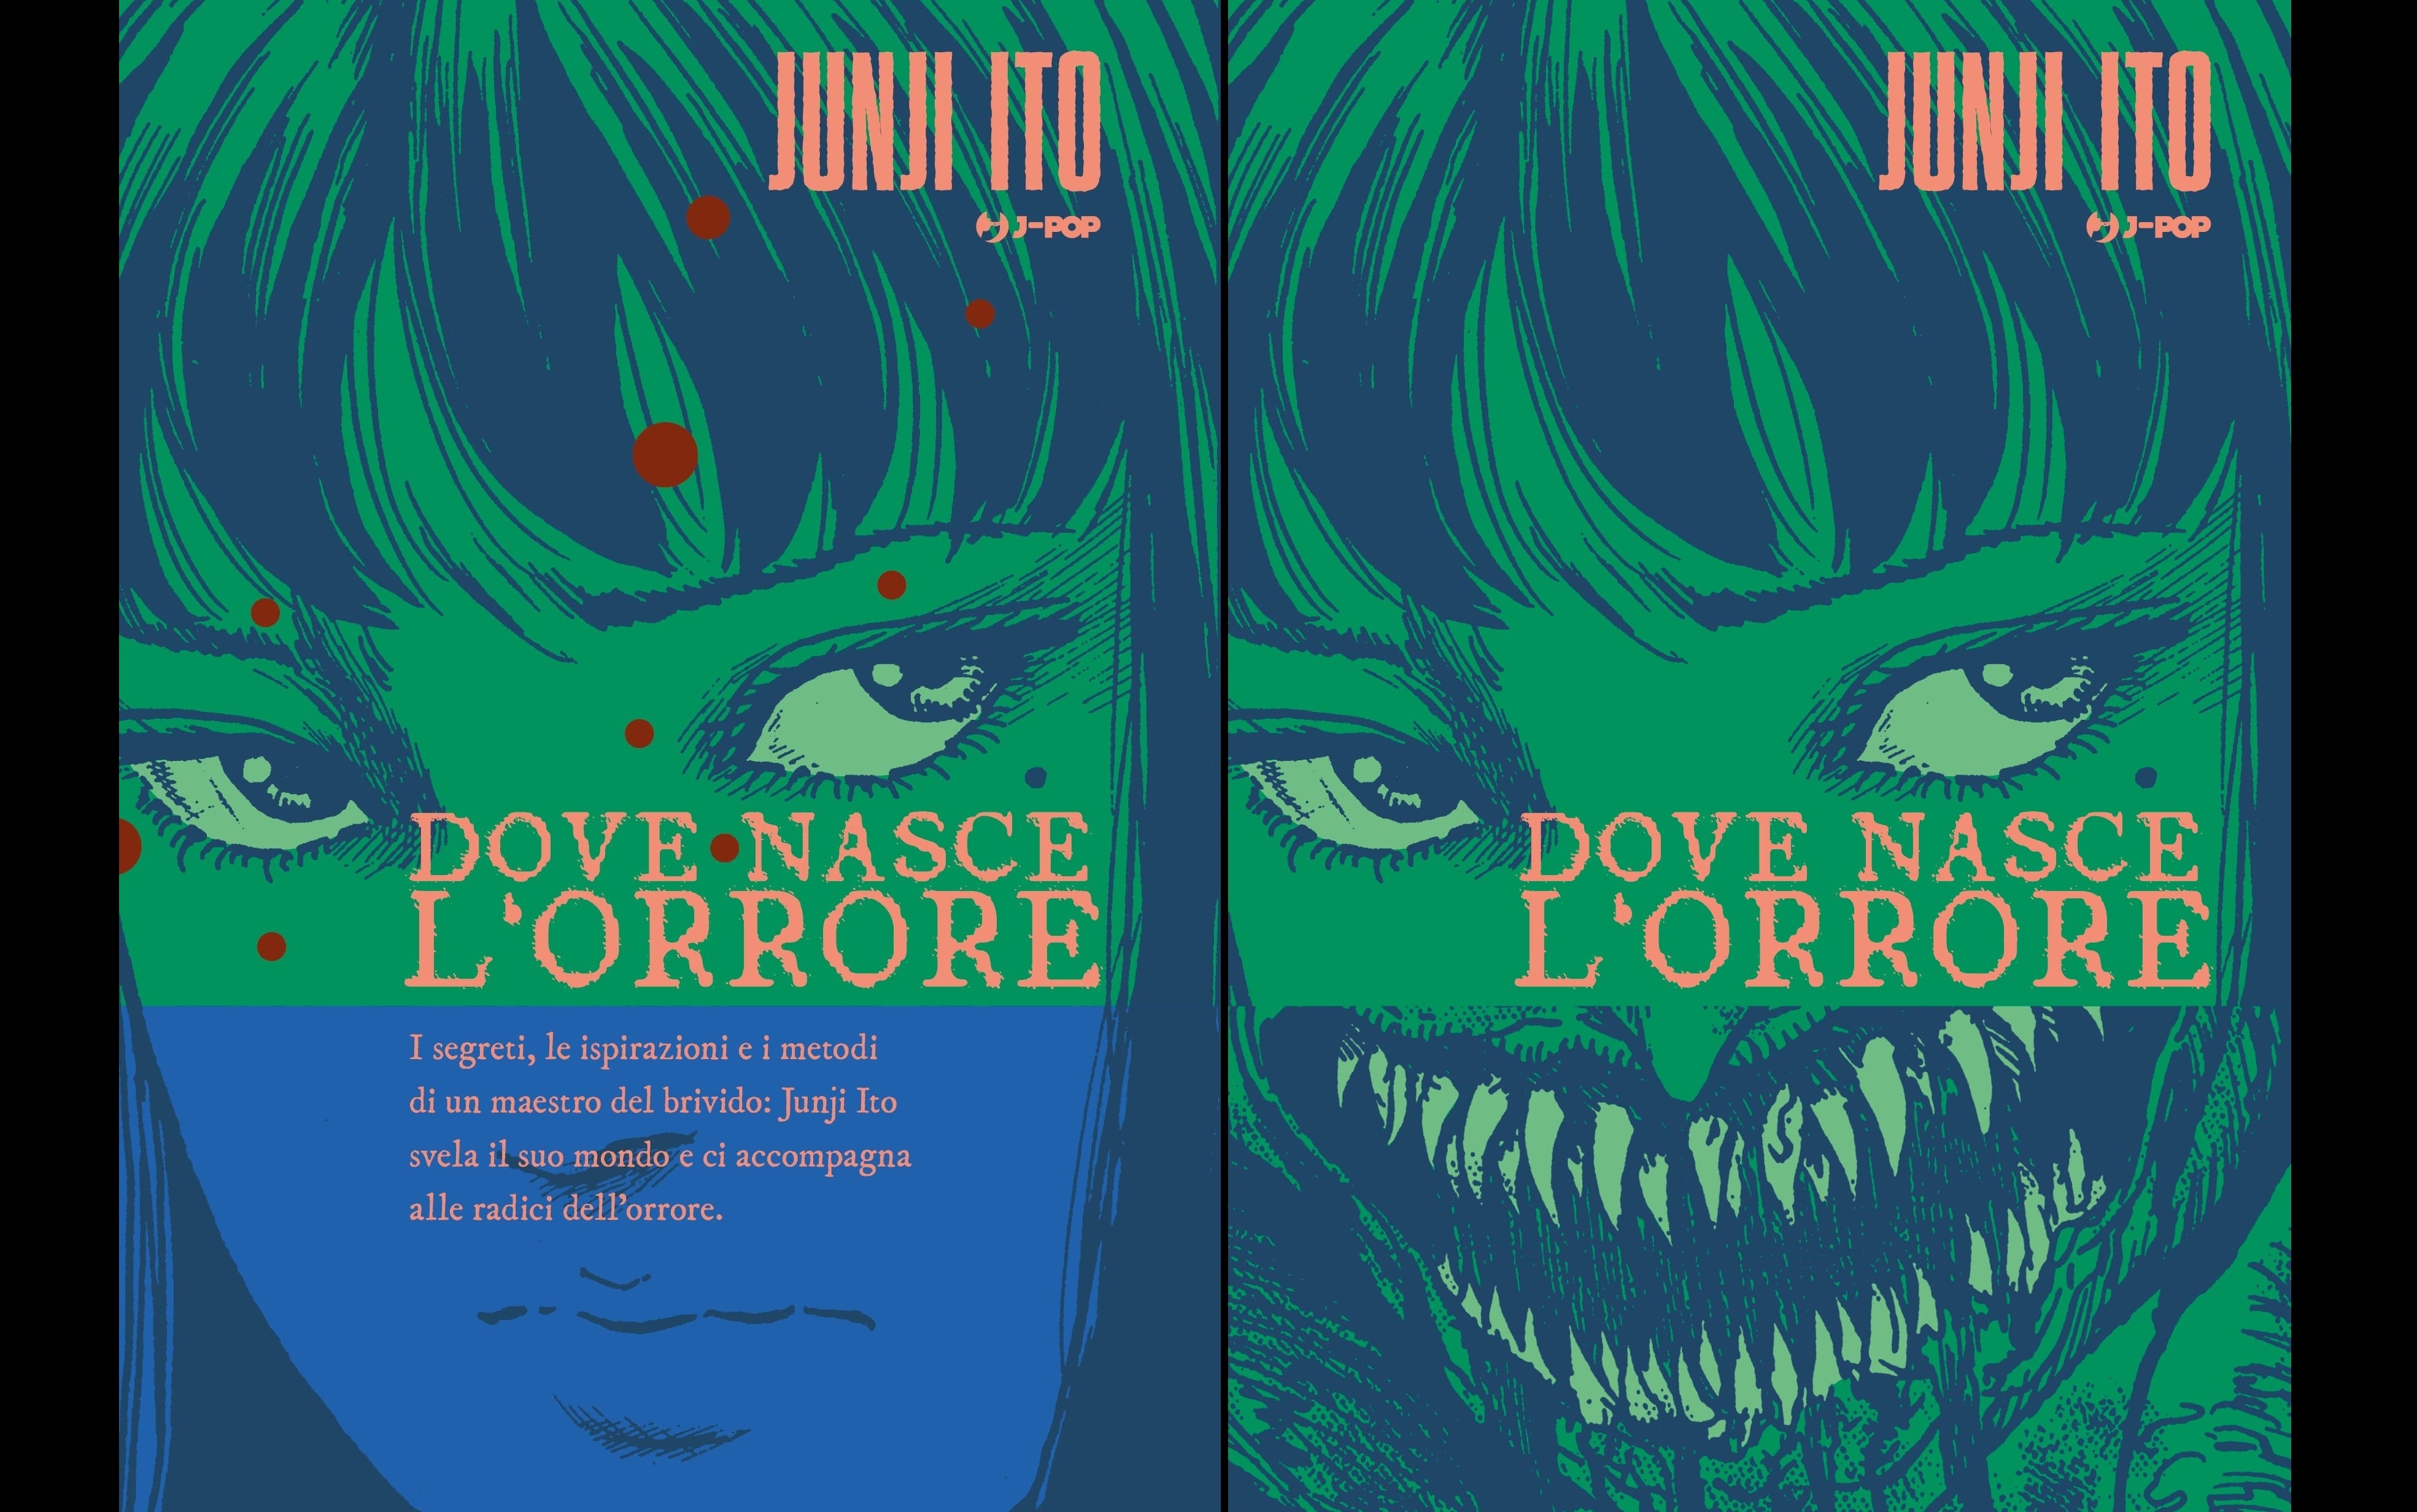 Junji Ito, Dove nasce l'orrore, J-Pop, 300 pagine, 20 euro